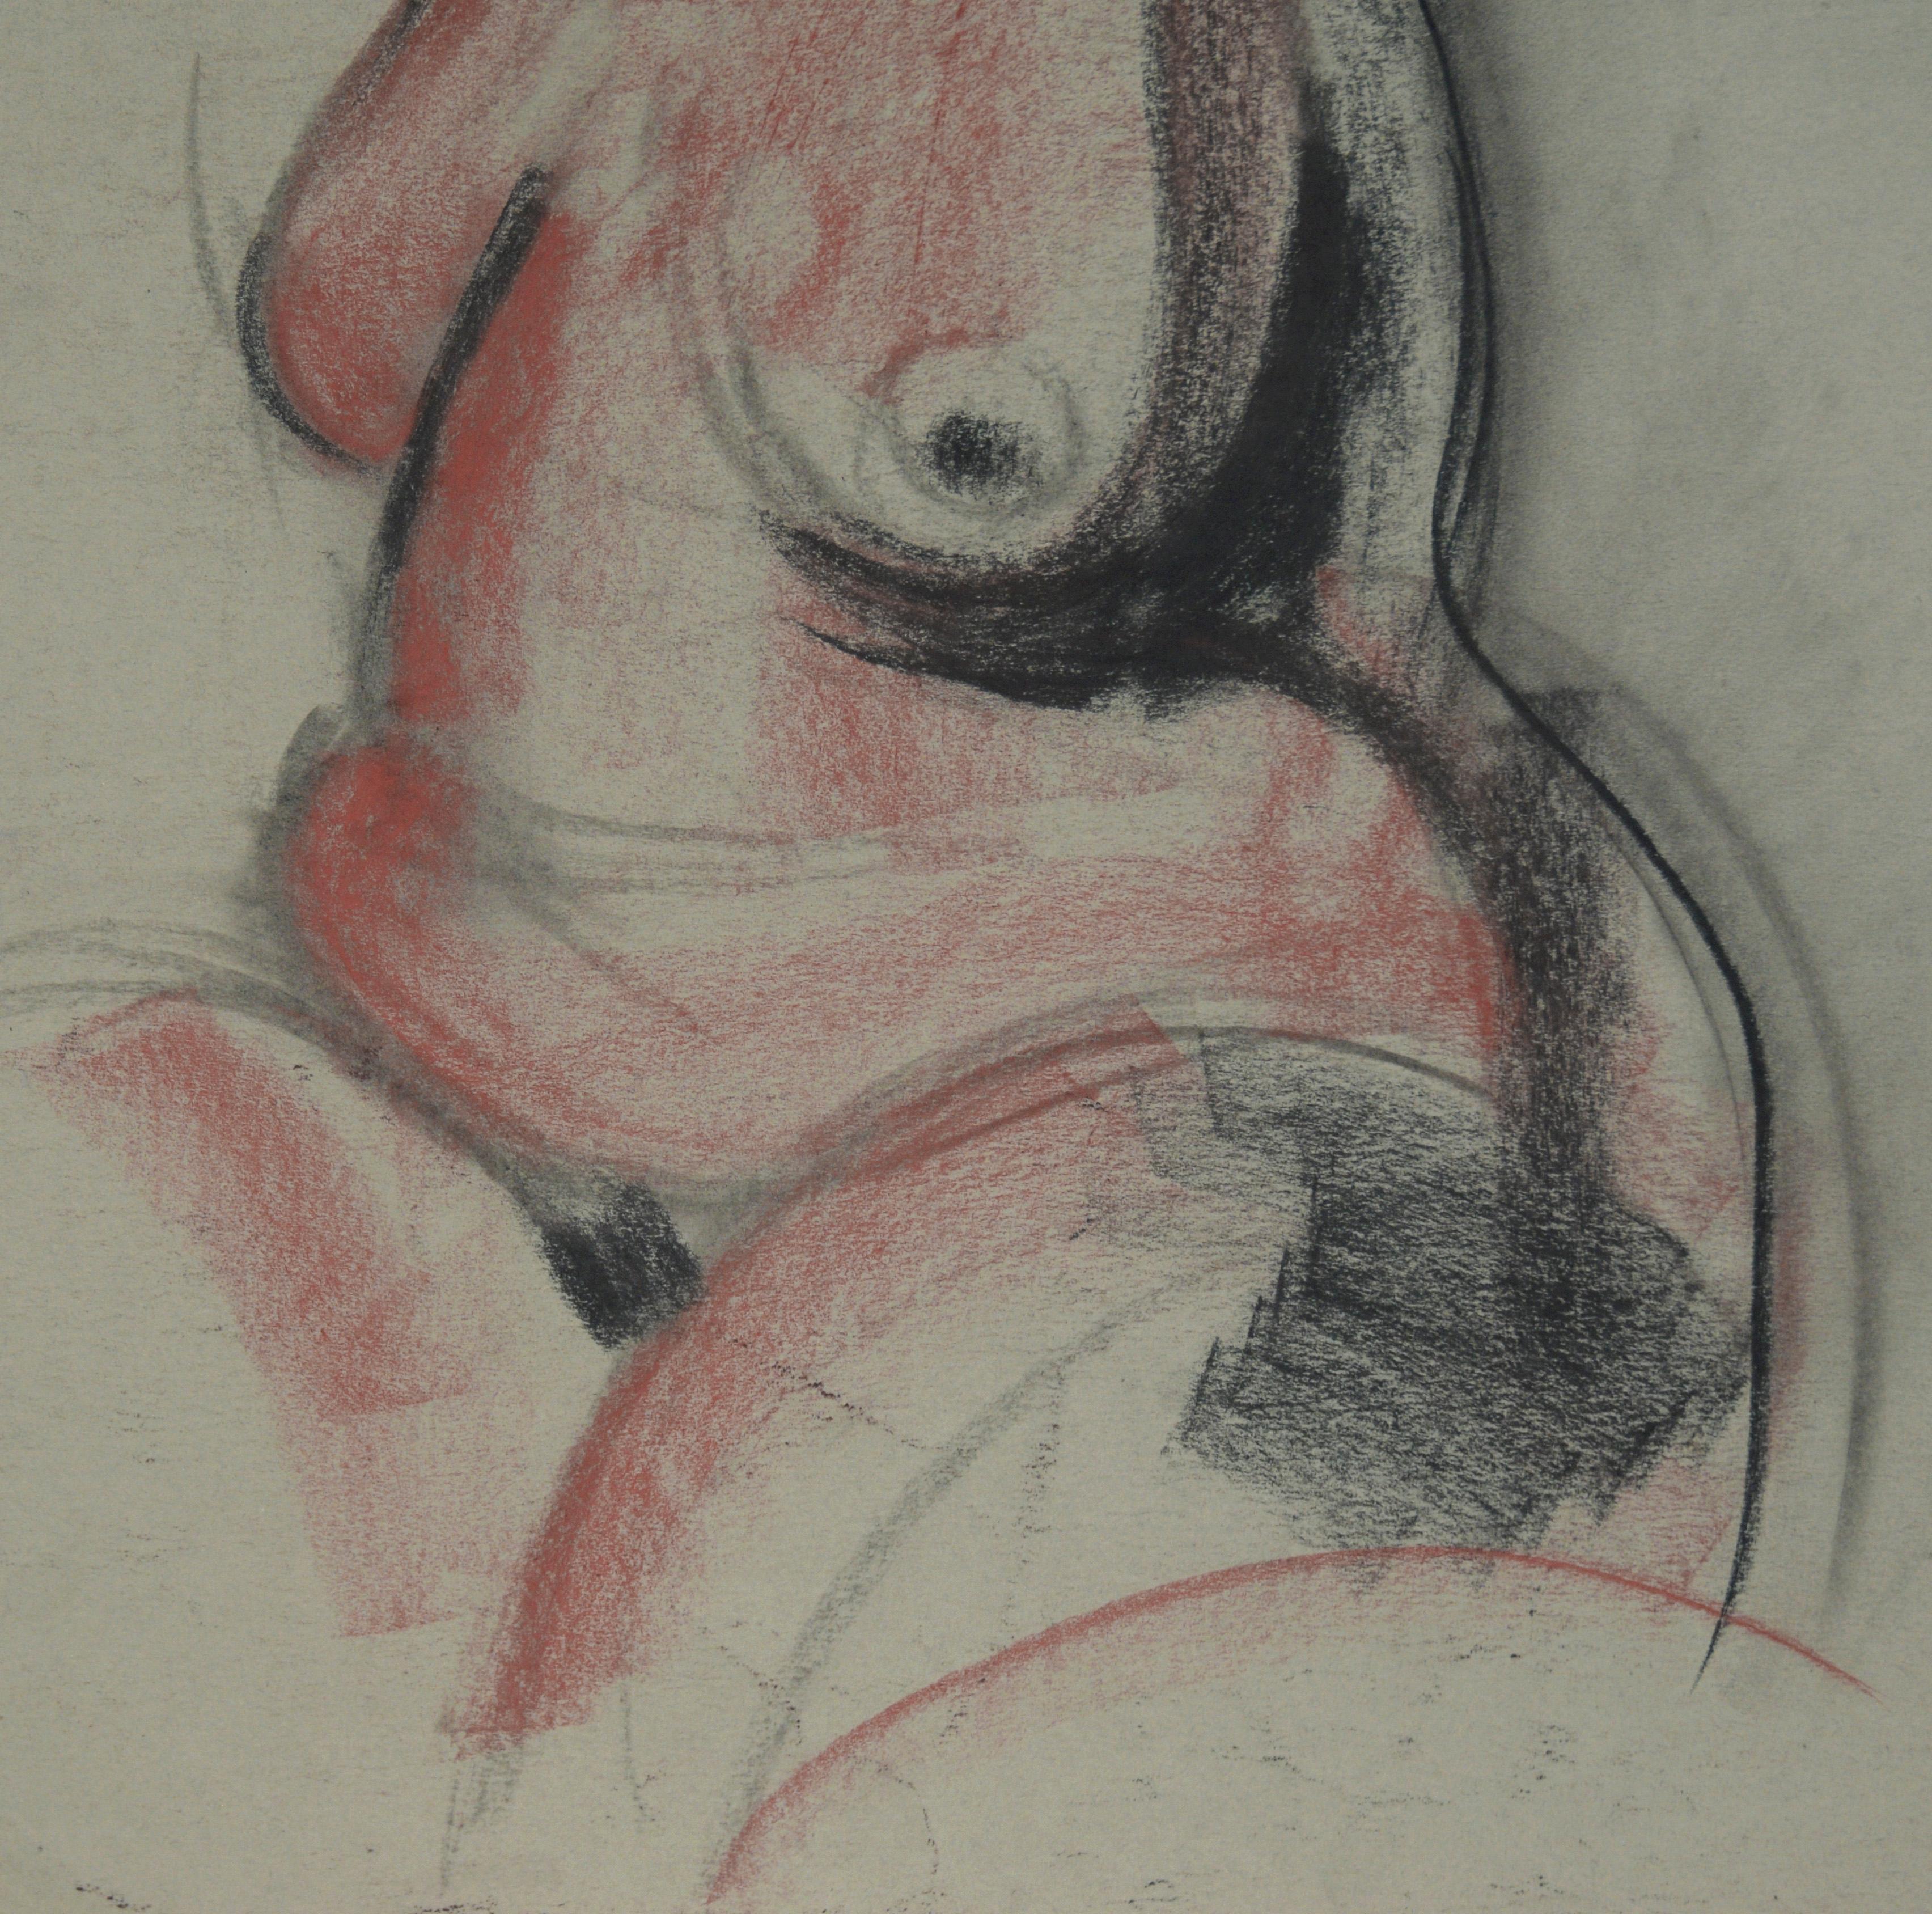 Sitzender weiblicher Akt in Holzkohle auf Papier

Figurative Arbeit mit einer nackten Frau der Künstlerin Heather Speck (Amerikanerin, geb. 1978) aus Santa Cruz und San Francisco. Das Modell sitzt, den Kopf vom Betrachter abgewandt, das Haar hängt